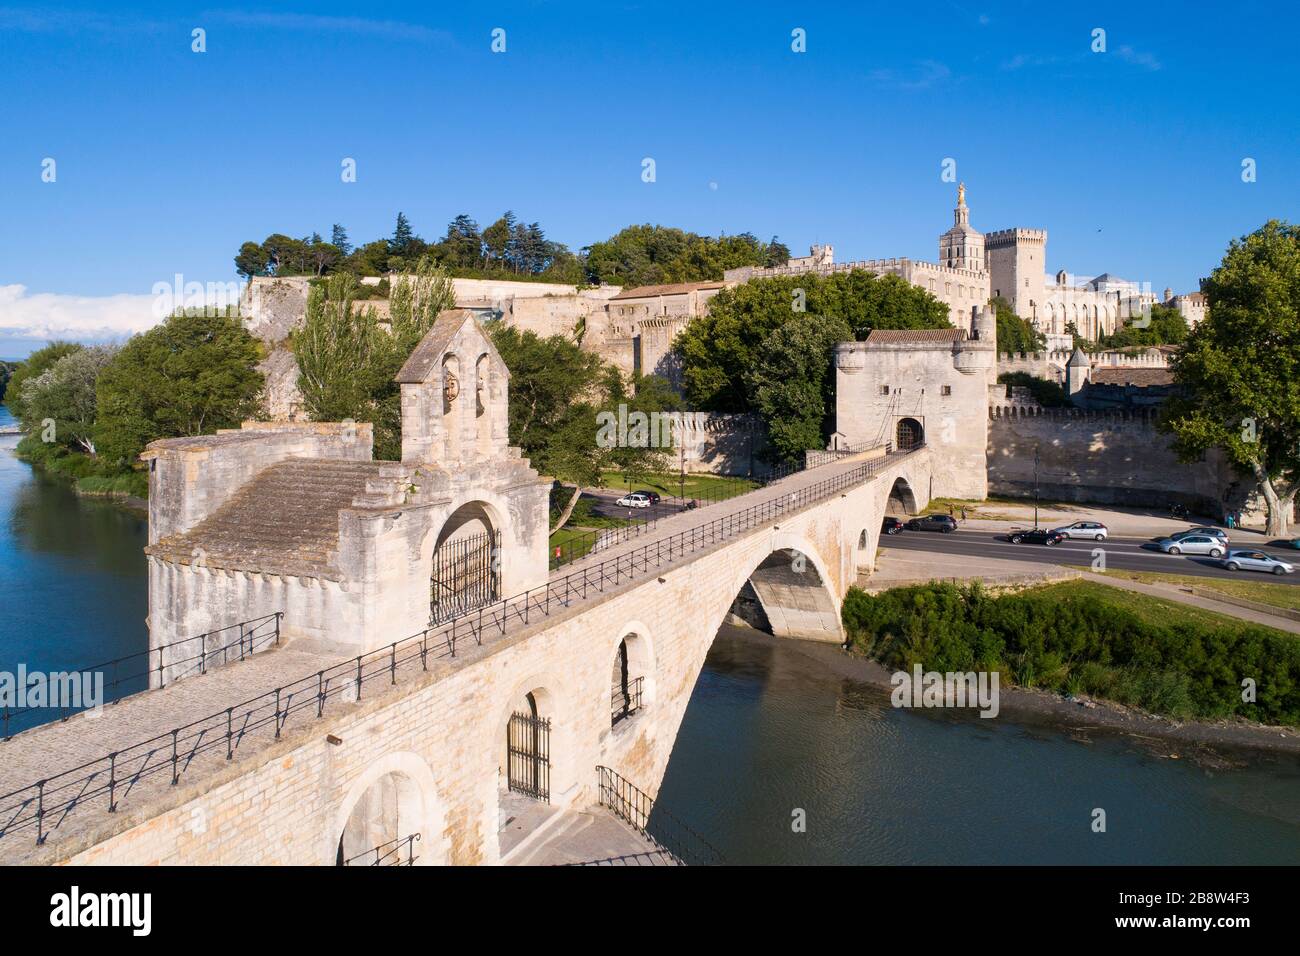 Luftaufnahme des Papstpalastes von Avignon (Palais des Papes) und der Brücke von Avignon (Pont d'Avignon oder Pont St-Bénézet), die von UNE als Weltkulturerbe aufgeführt ist Stockfoto